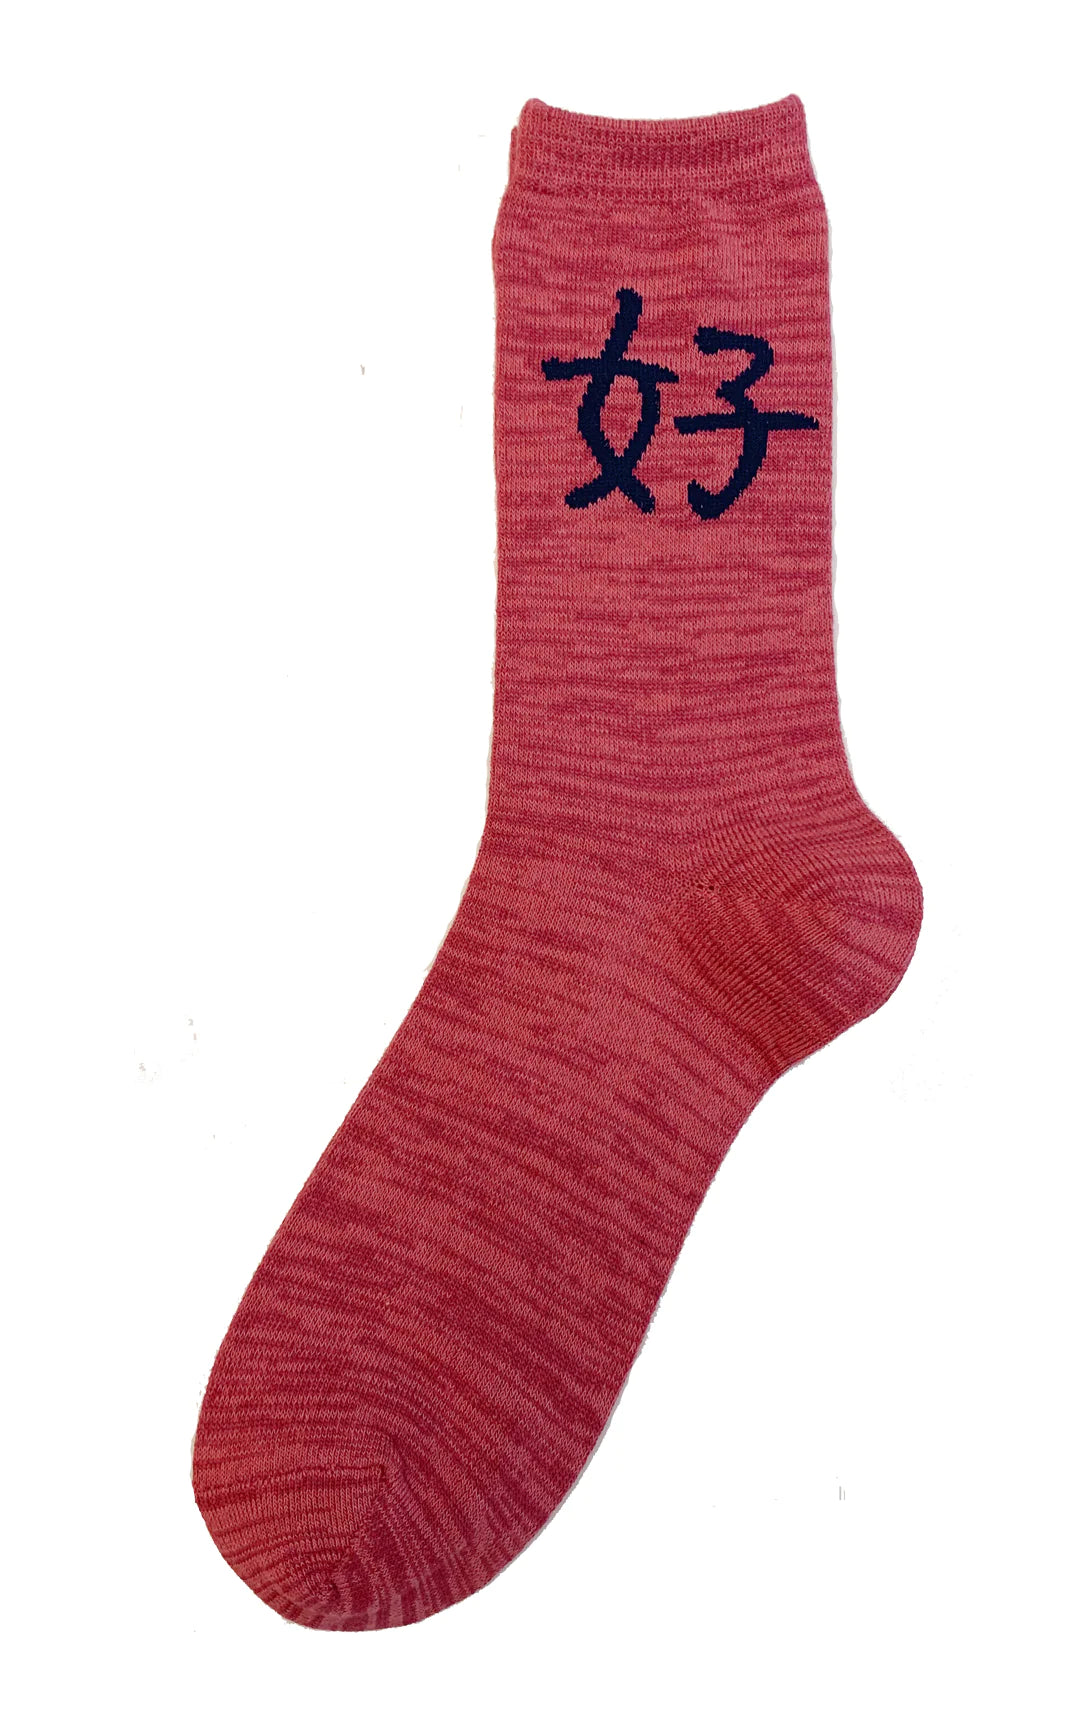 Kihachiro Sho's Sence Lucky Kanji Calligraphy Socks in Golden Rose/Navy